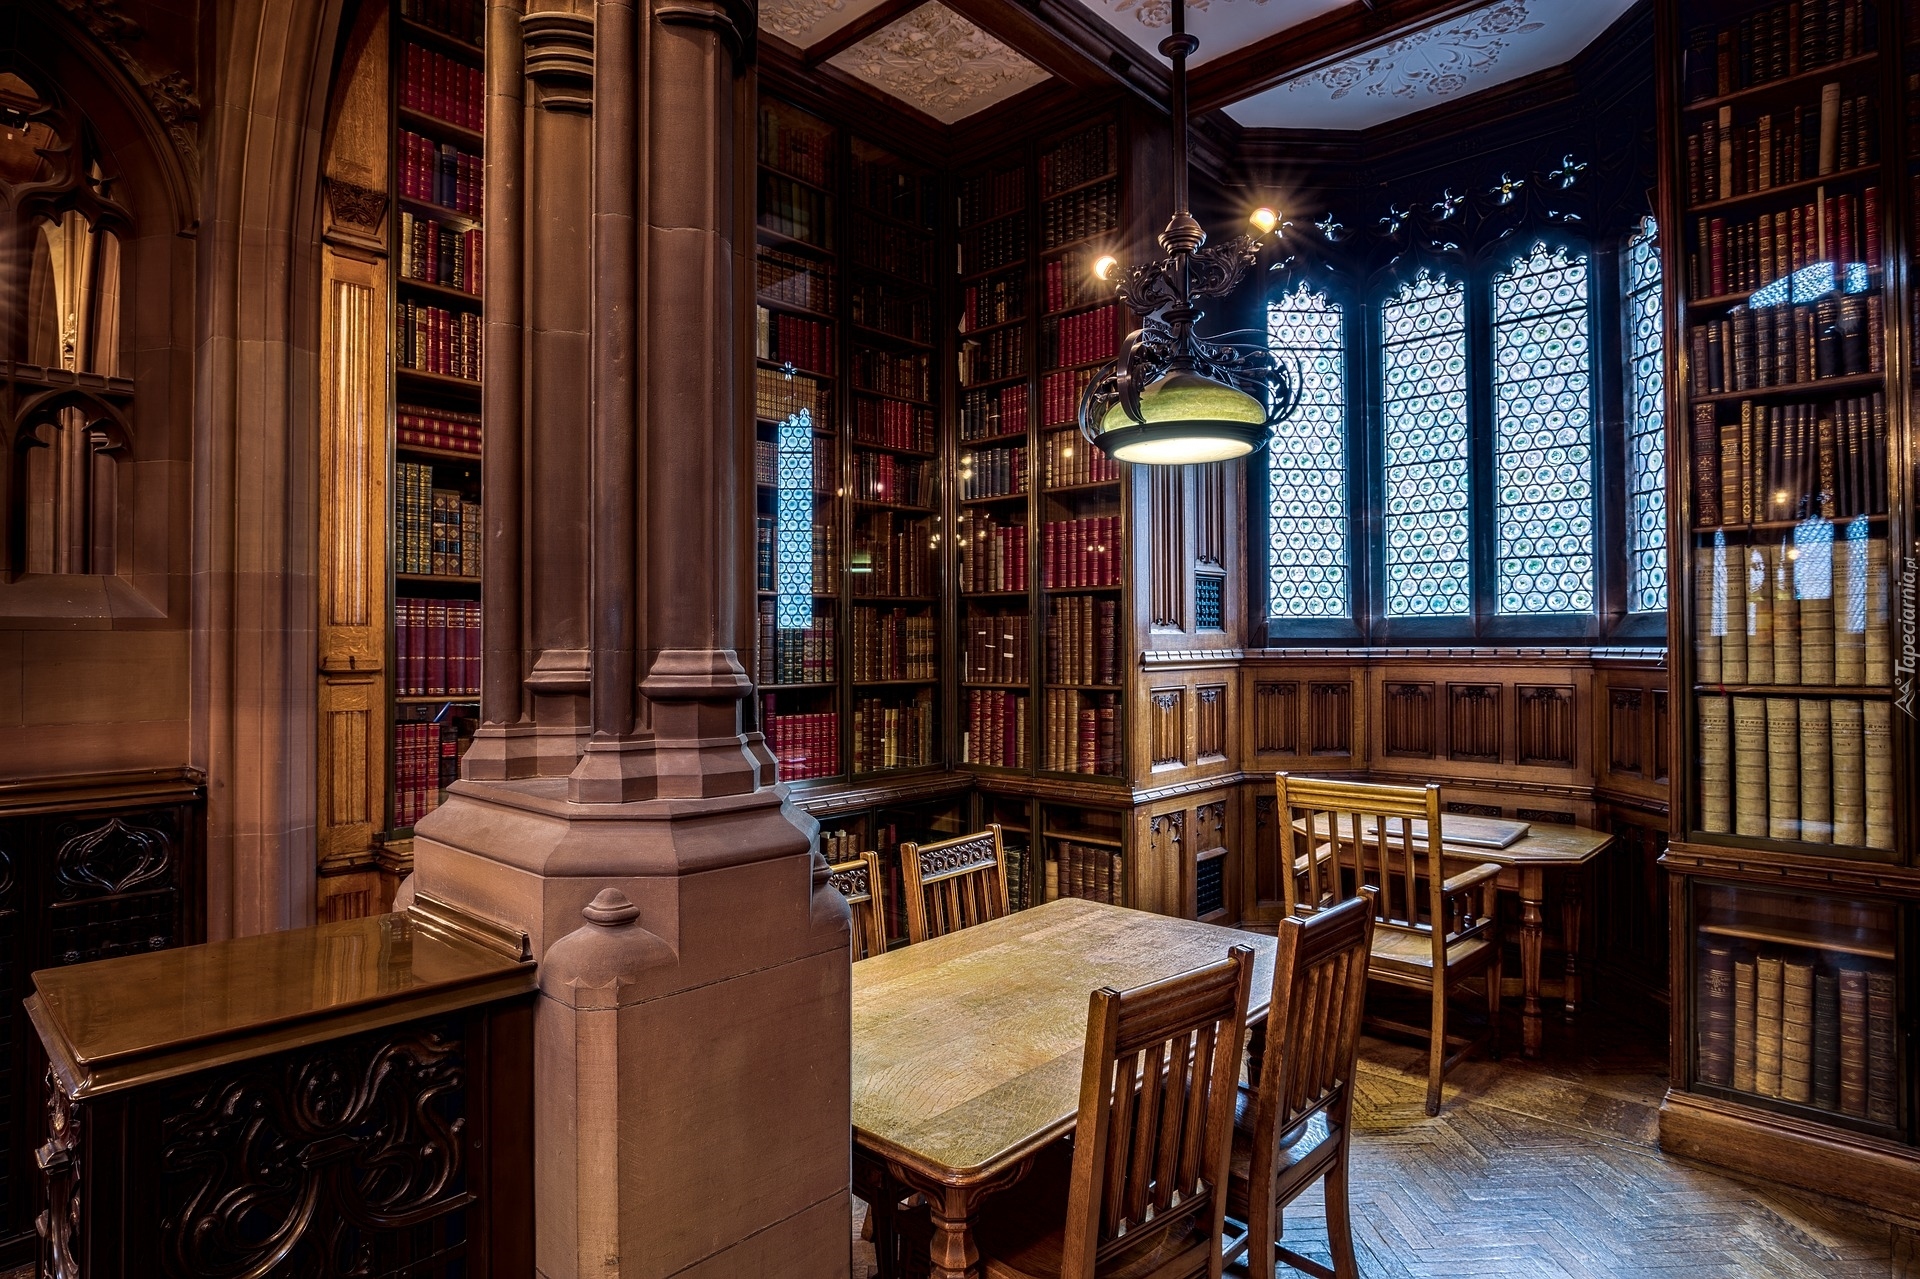 Wnętrze, Biblioteka John Rylands Library, Manchester, Anglia, Książki, Stoły